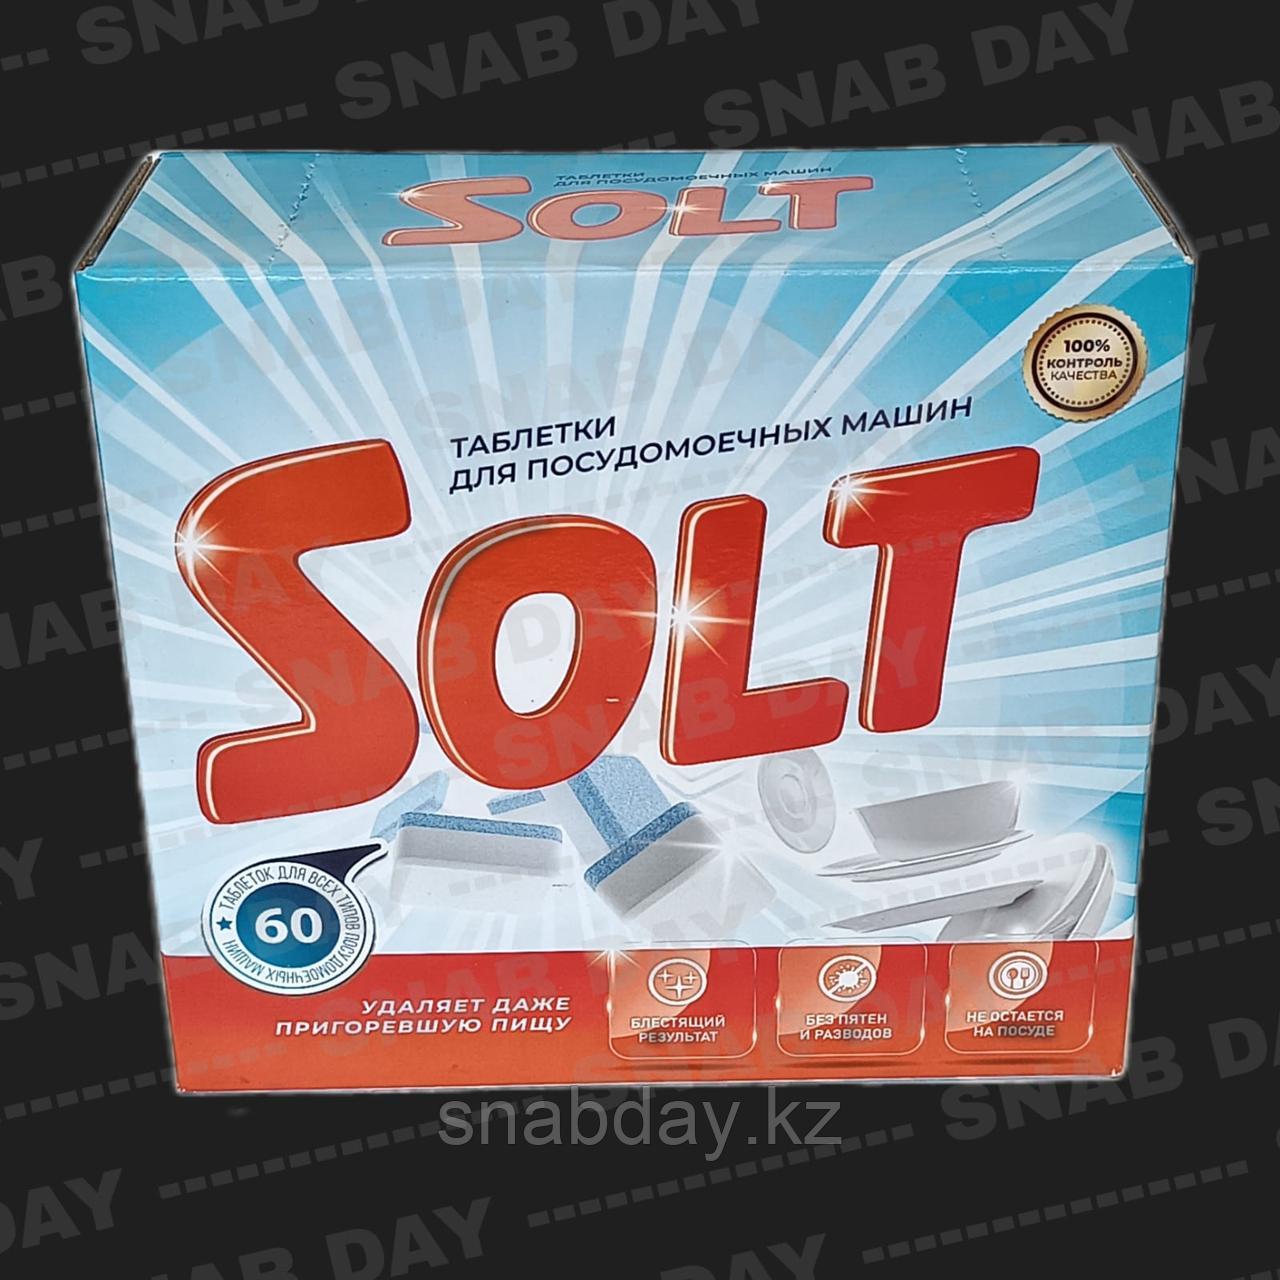 Таблетки для посудомоечных машин SOLT  60 штук